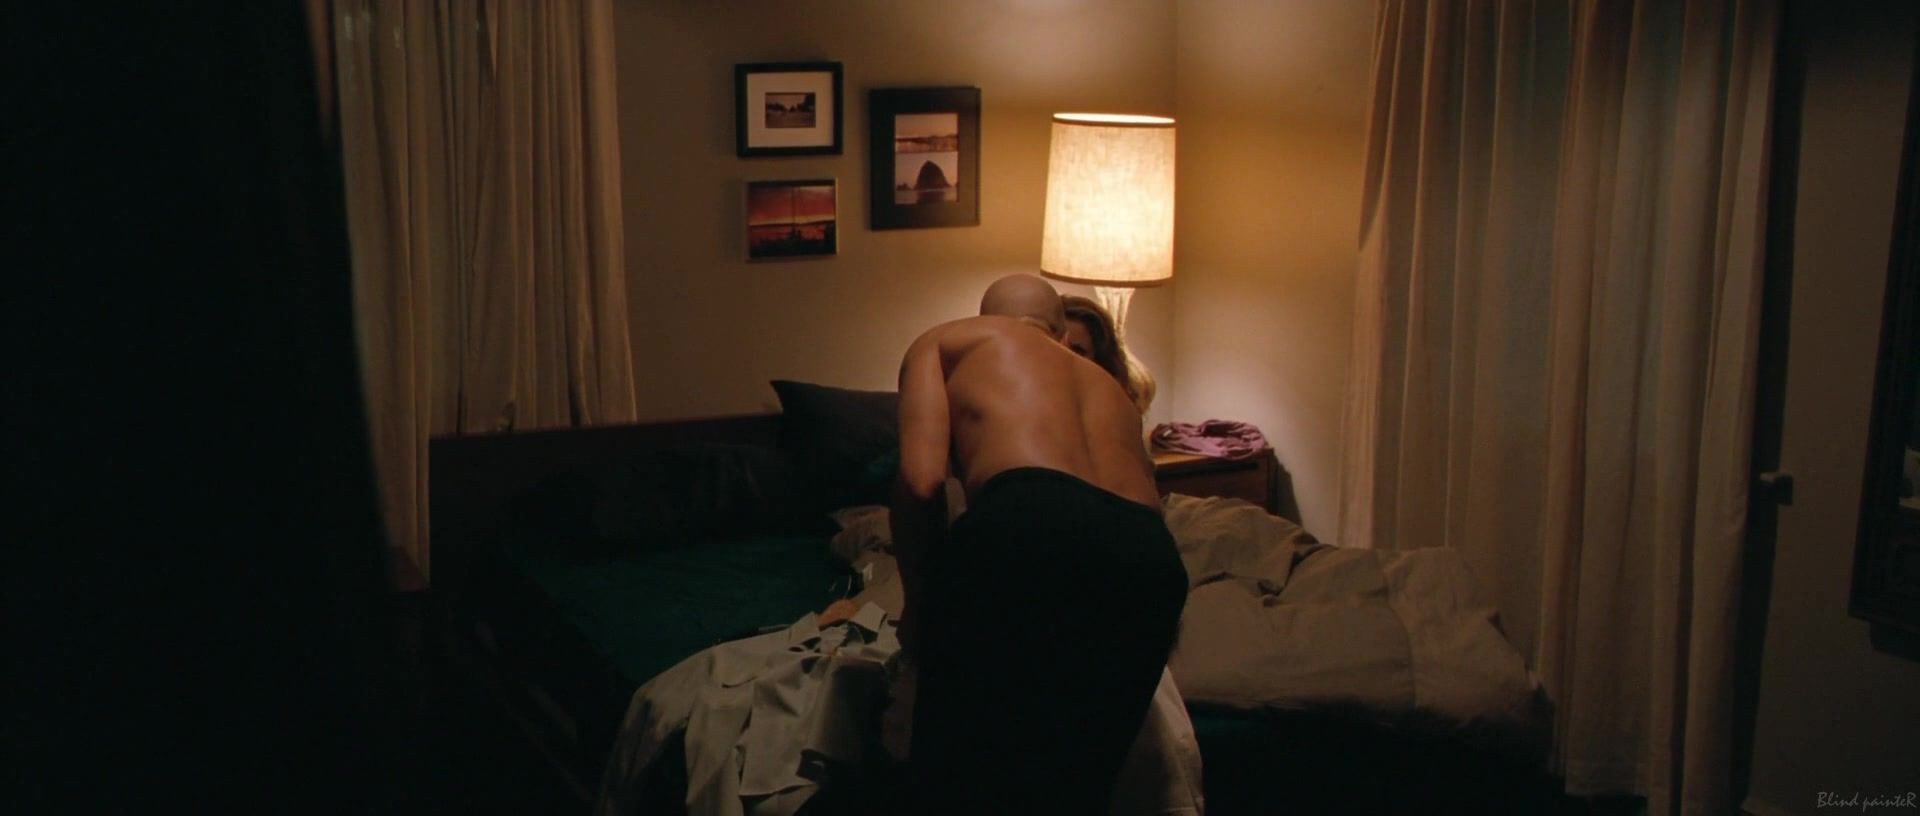 Punish Jena Malone, Lisa Joyce nude - The Messenger (2009) Sexvideo